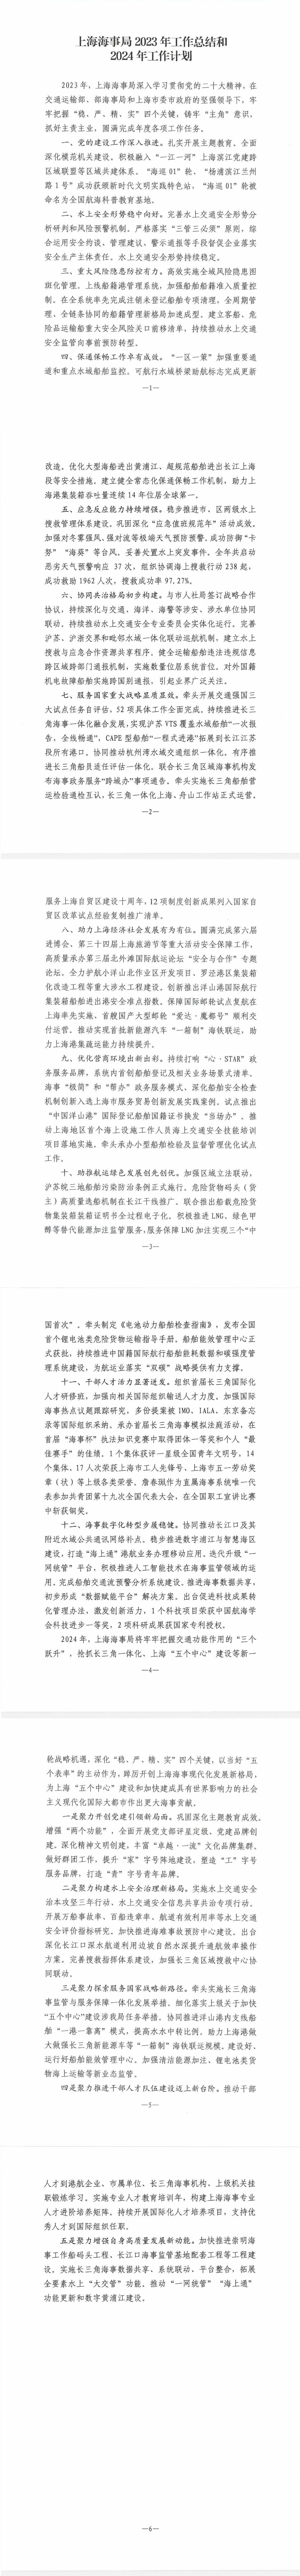 上海海事局2023年工作总结和2024年工作计划.jpeg